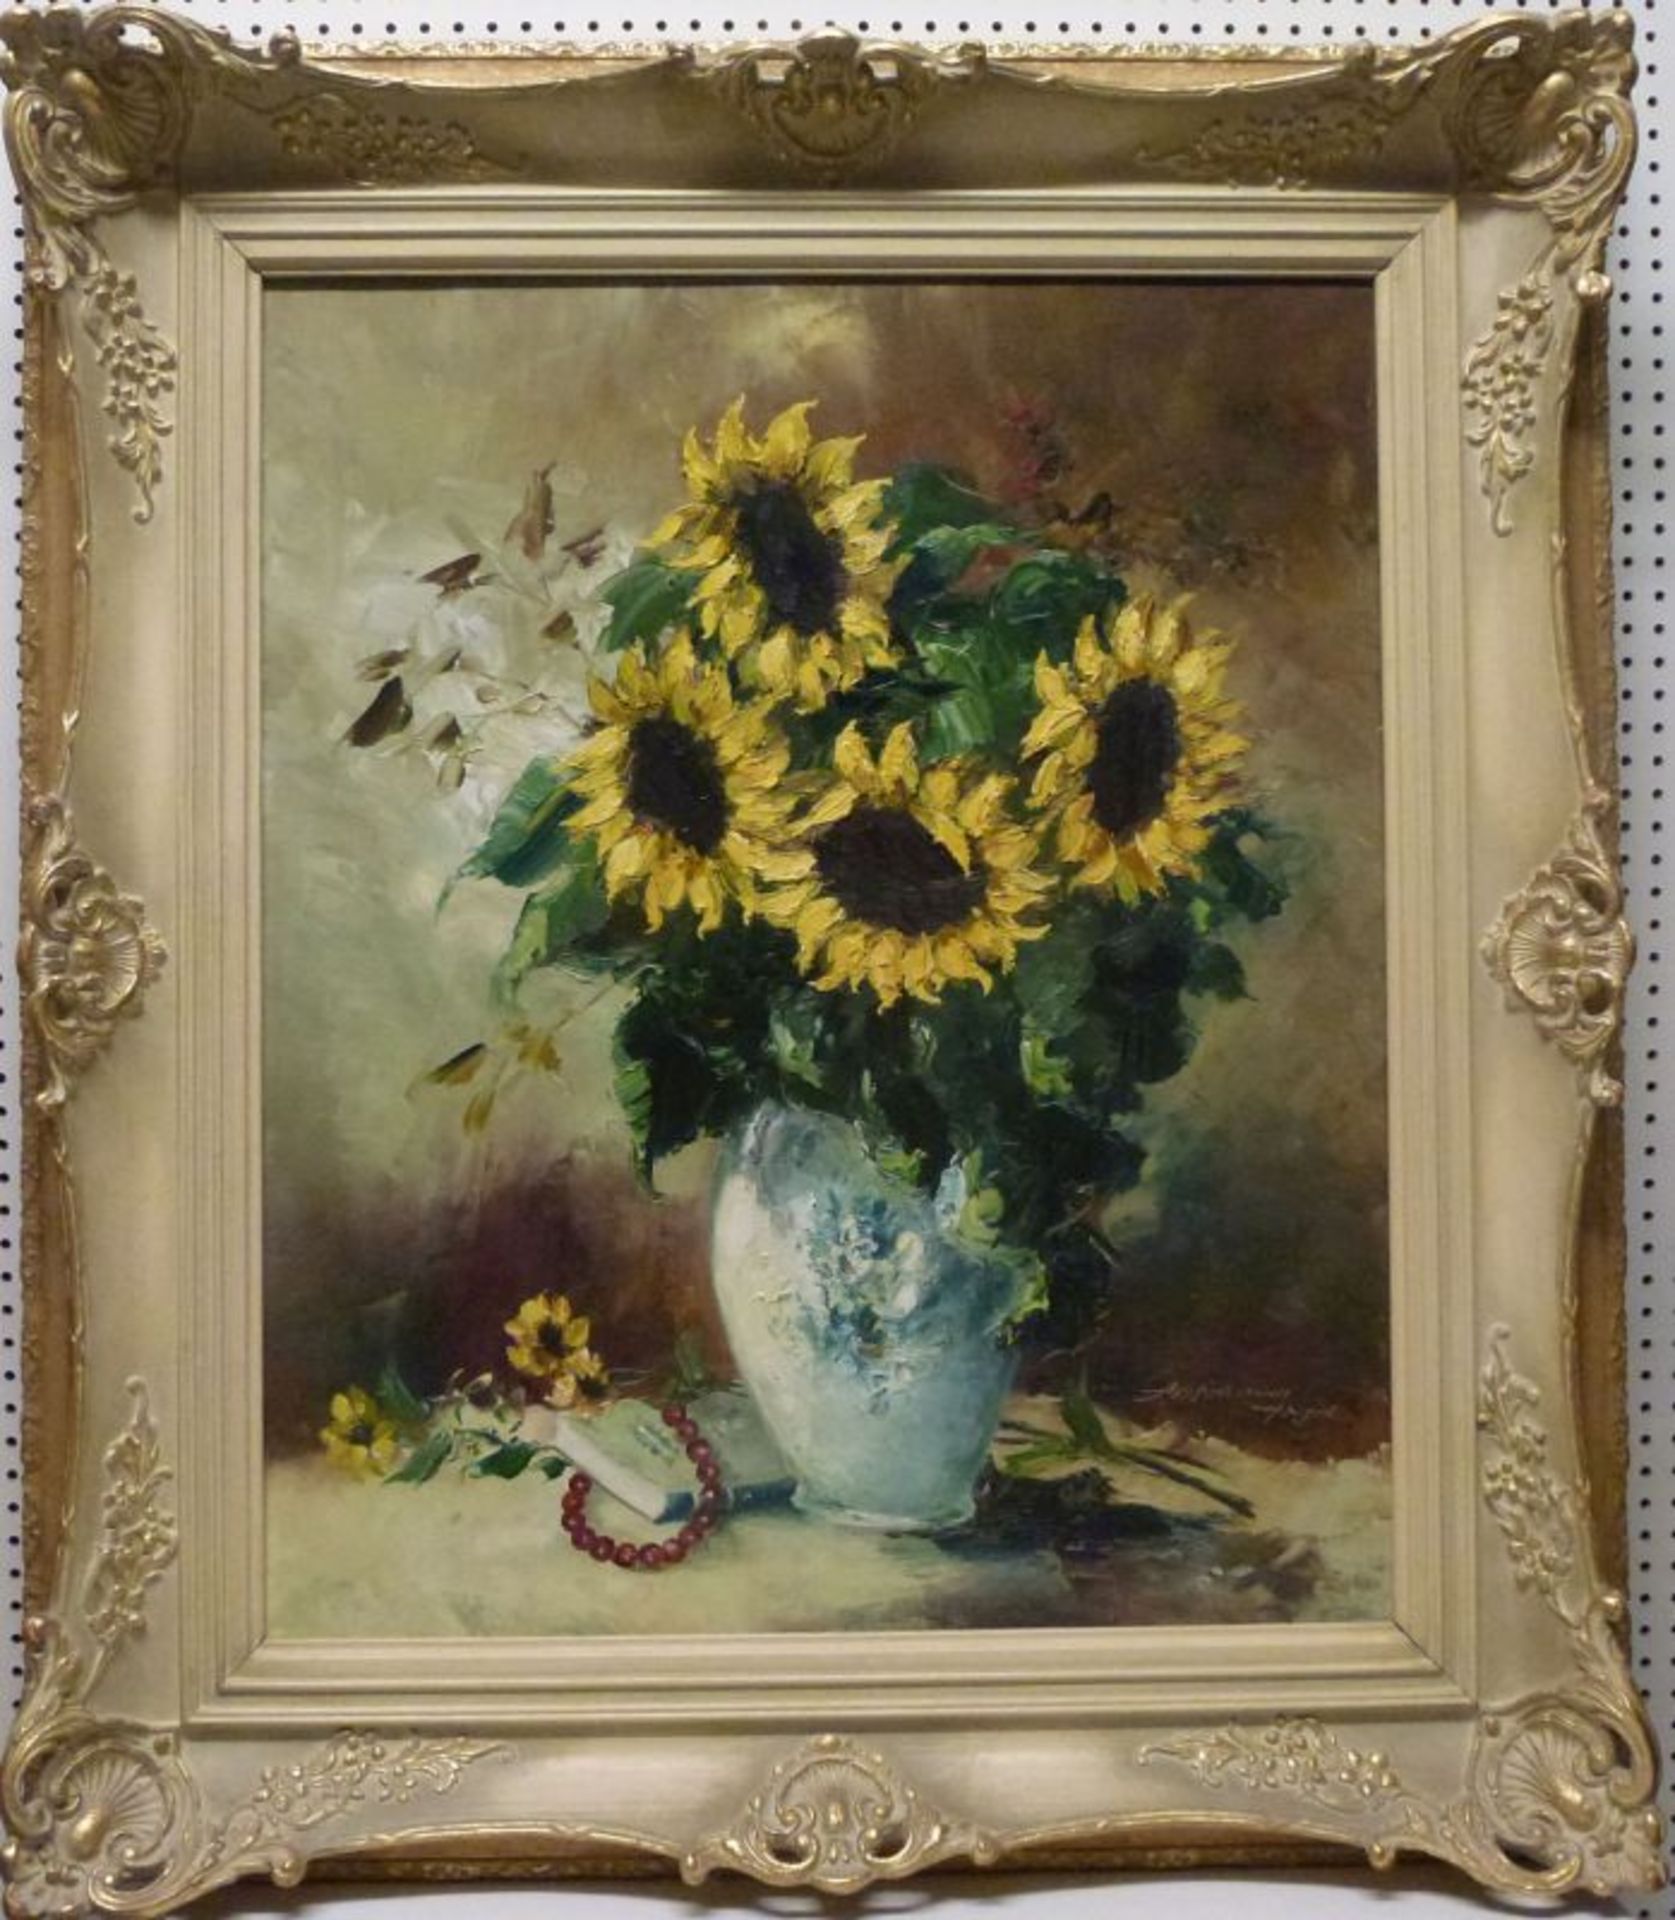 SonnenblumenFriedrich Adolf Apfelbaum, 1904-'74SonnenblumenÖl/LW, sign., Strauß in Vase, 60x50 cm, - Image 2 of 3